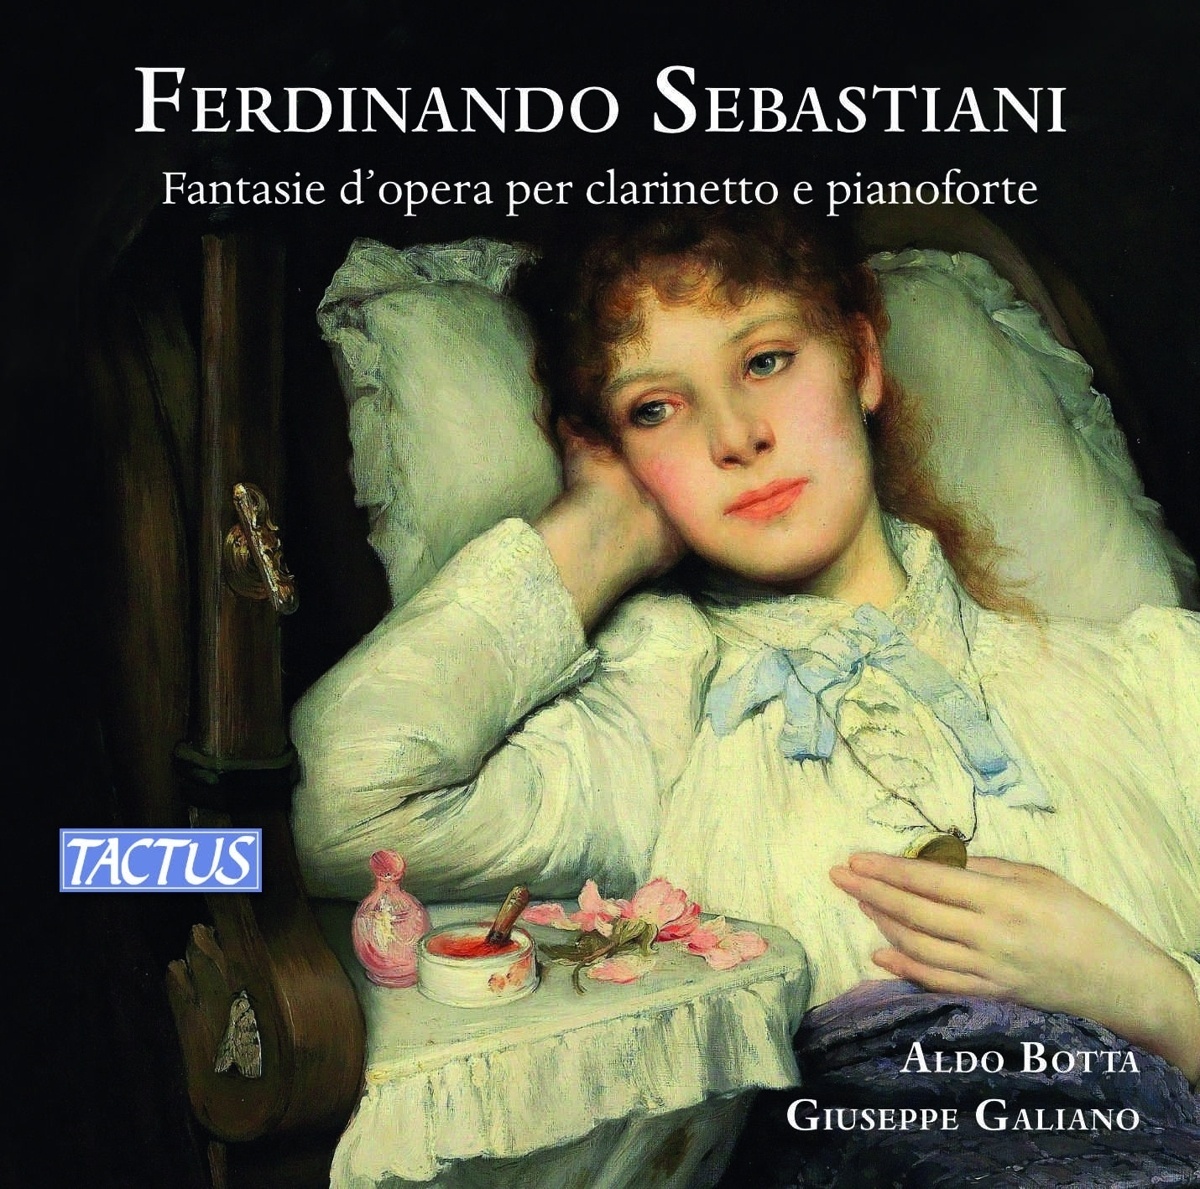 Fantasie D'Opera Per Clarinetto E Pianoforte - Aldo Botta  Giuseppe Galiano. (CD)